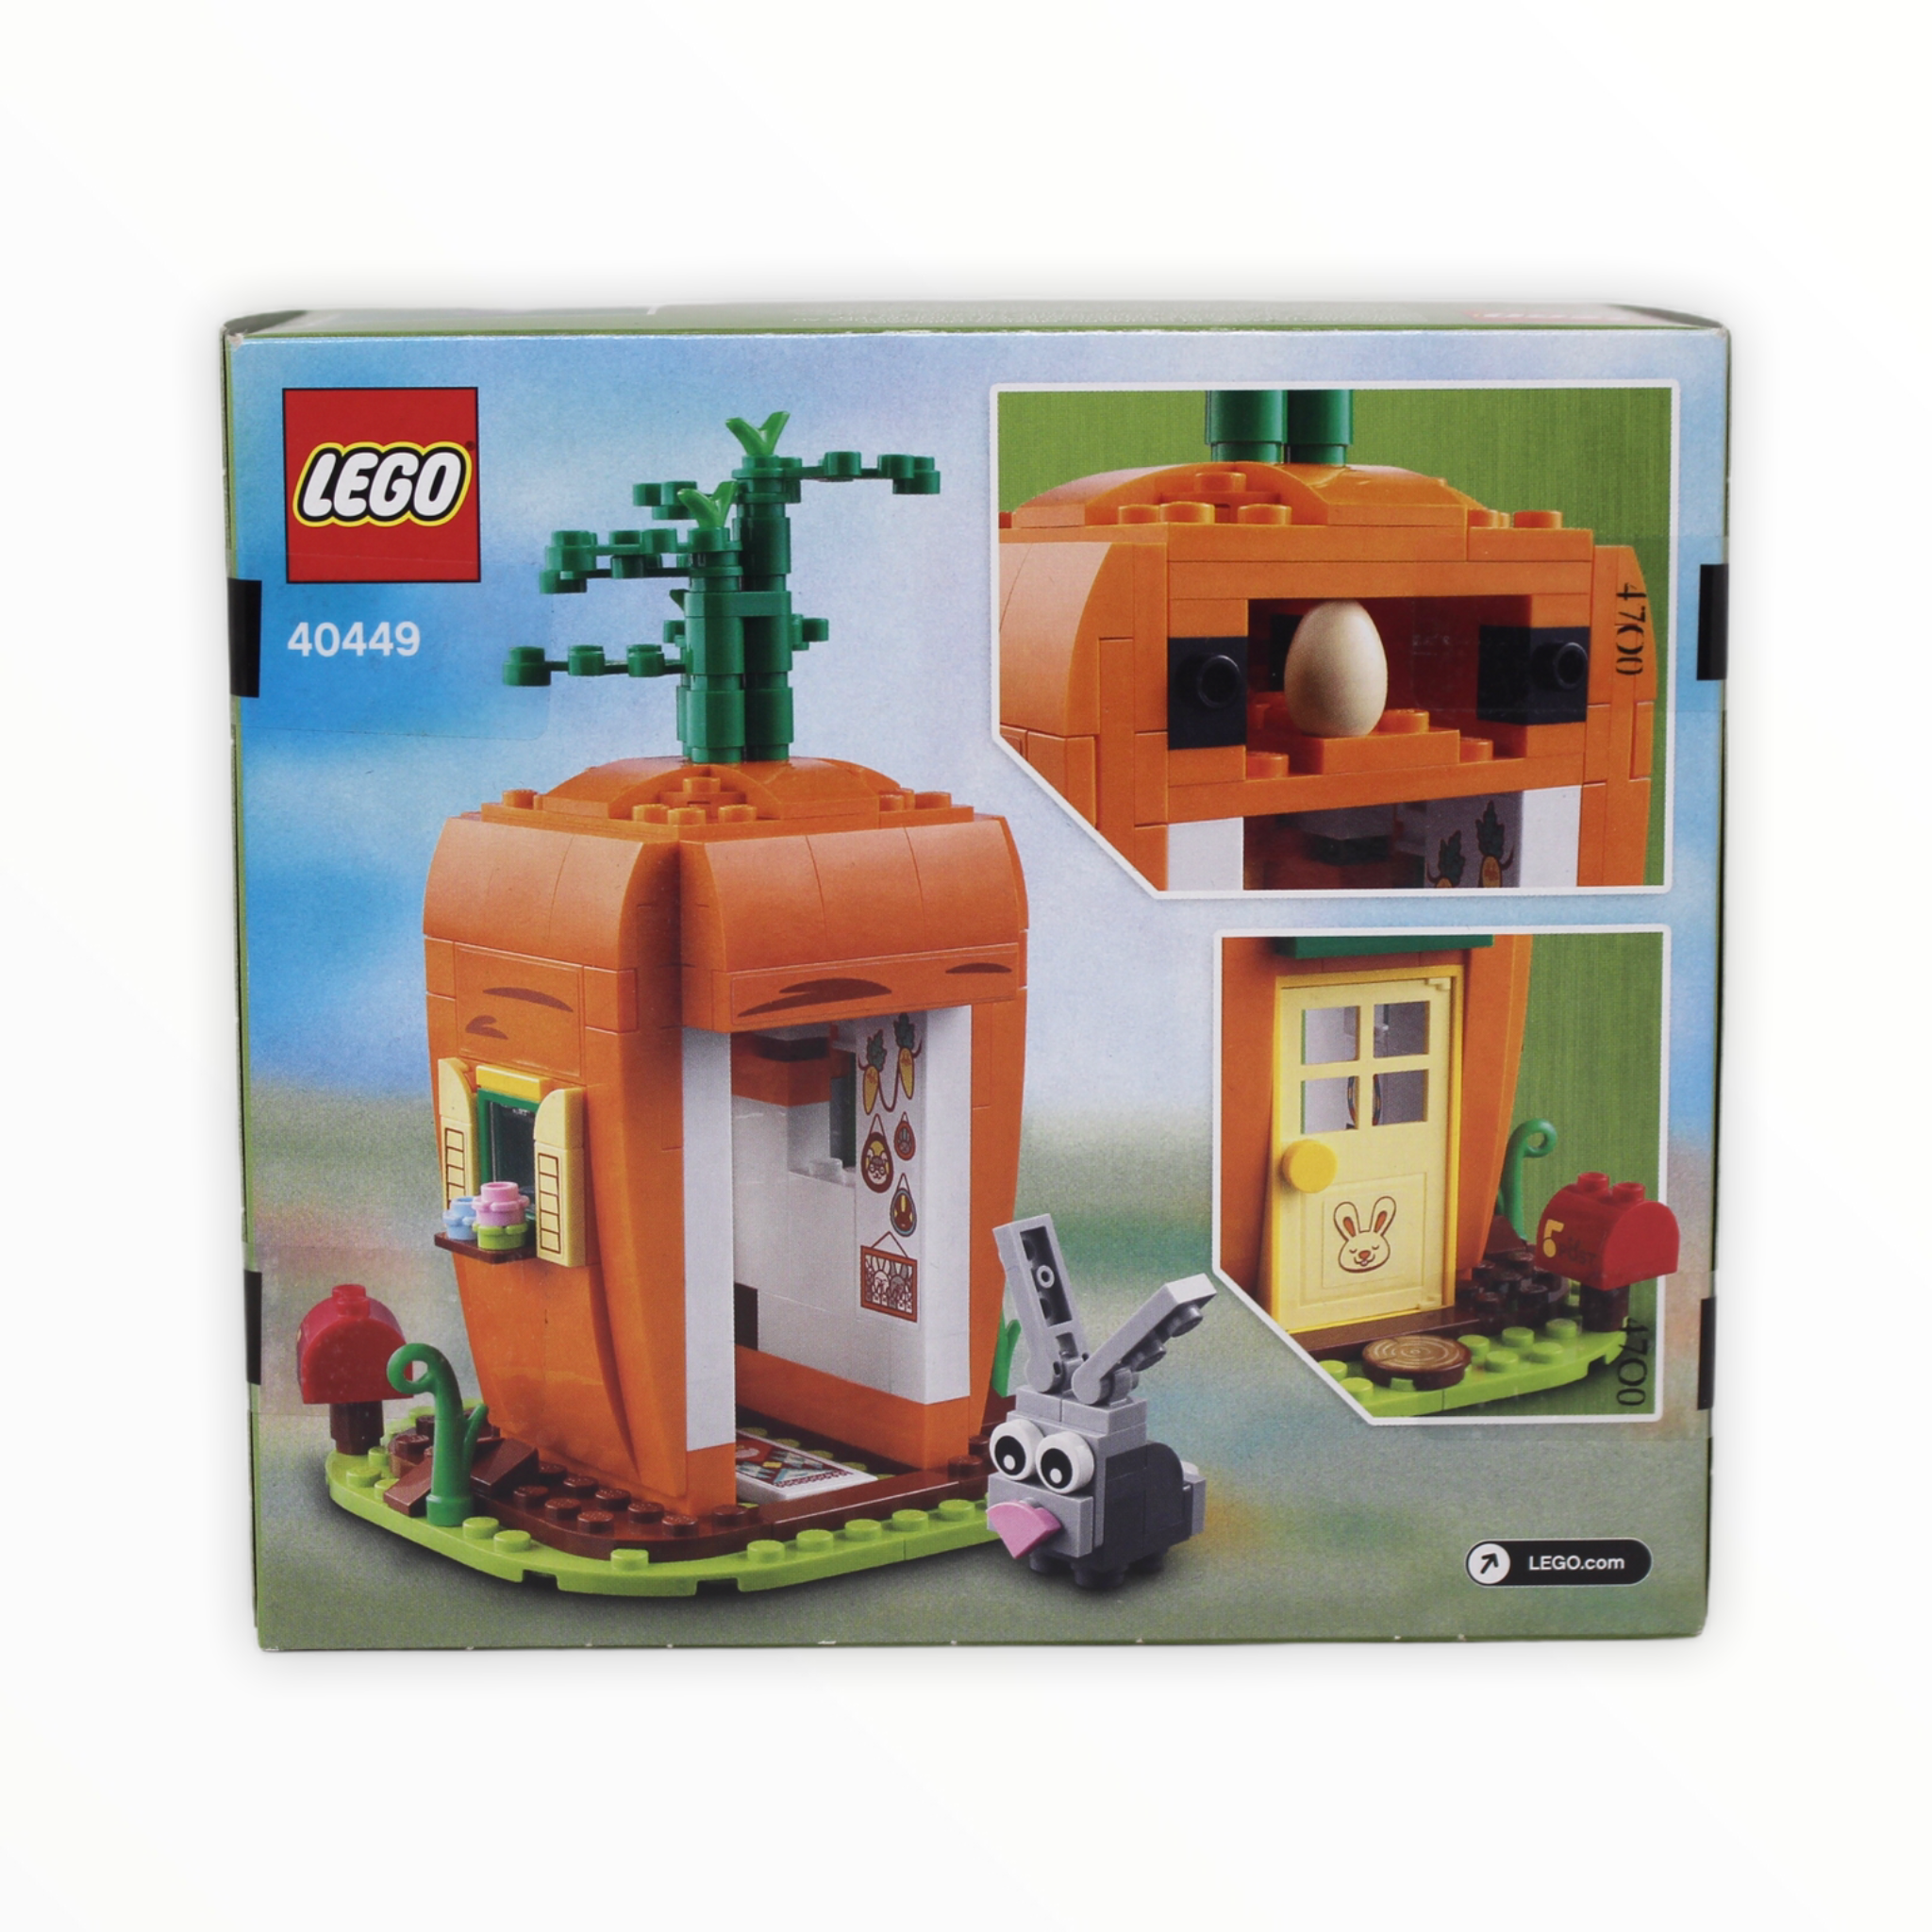 Retired Set 40449 LEGO Easter Bunny’s Carrot House